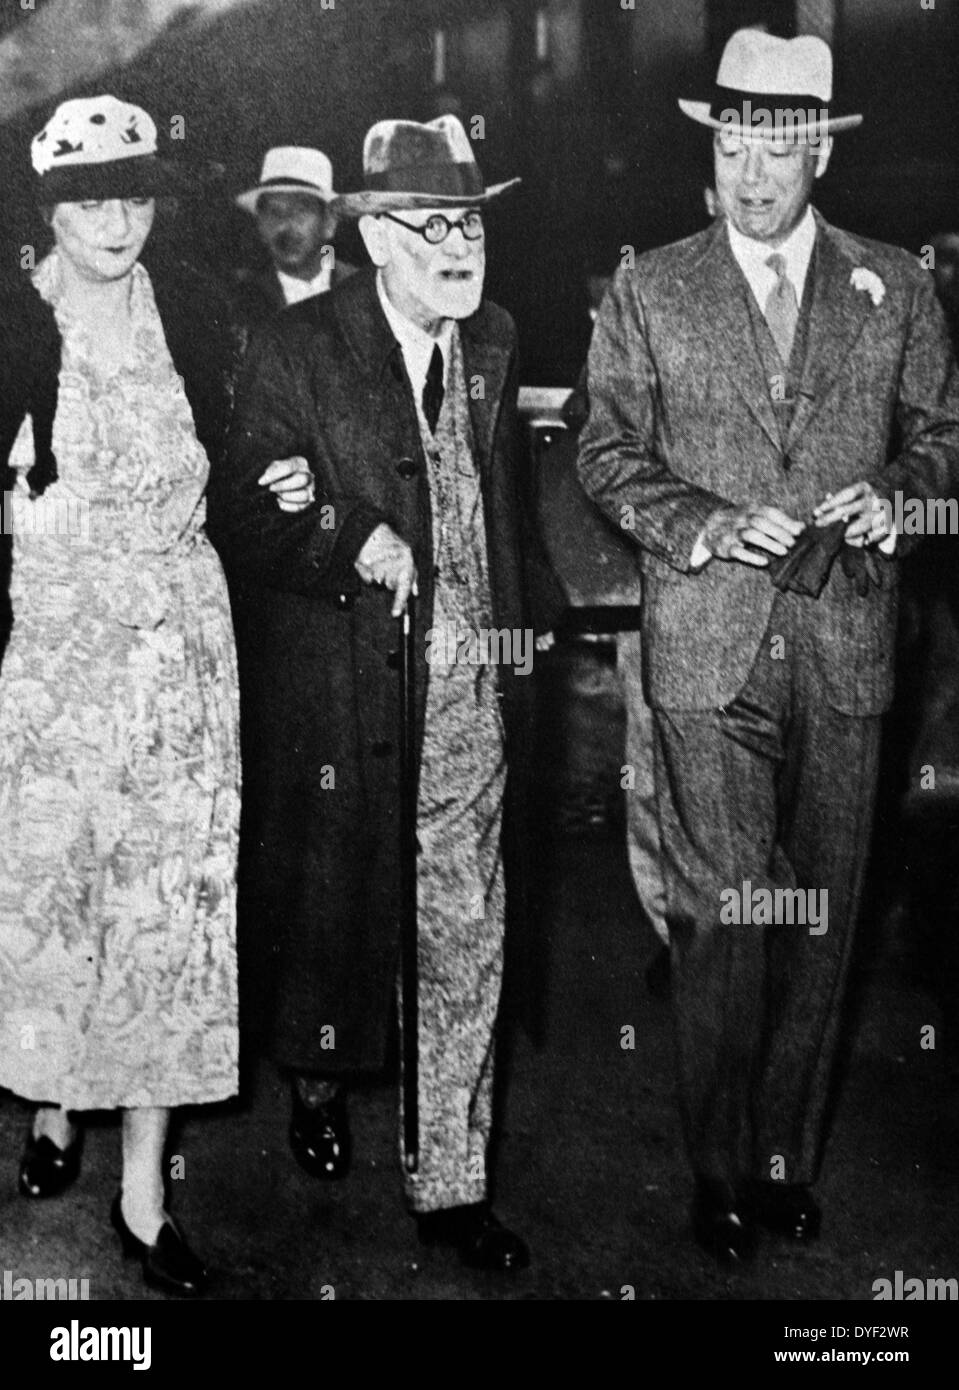 Foto von Sigmund Freud, Österreichischer neurologe als Gründungsvater der Psychoanalyse, auf der Flucht vor Nazi-deutschland für England bekannt. Circa 1938. Stockfoto